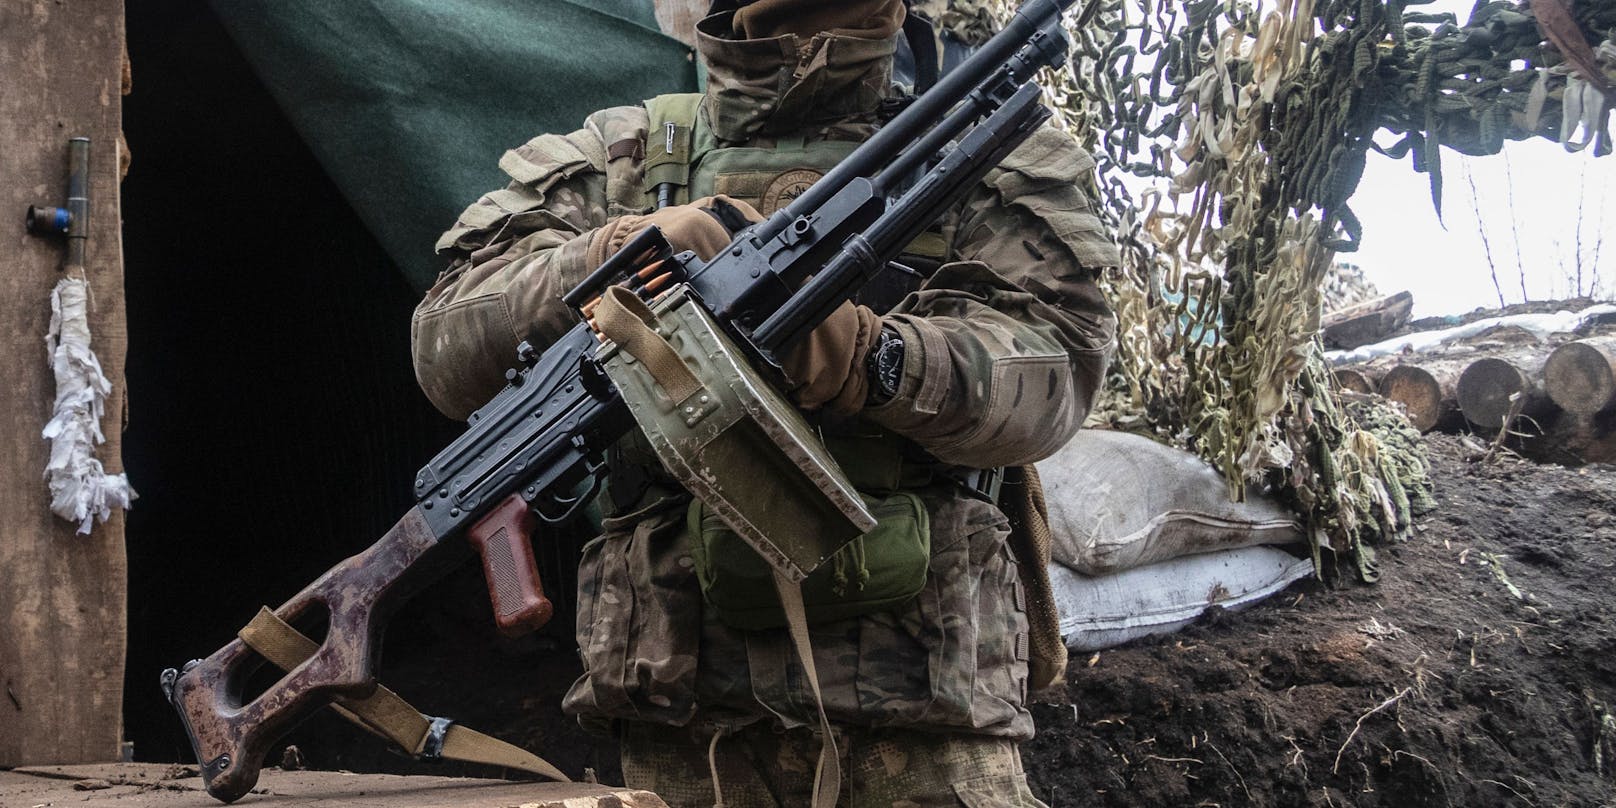 In der viertgrößten Stadt der Ukraine hat ein Soldat mindestens fünf seiner Kameraden getötet. (Symbolbild)